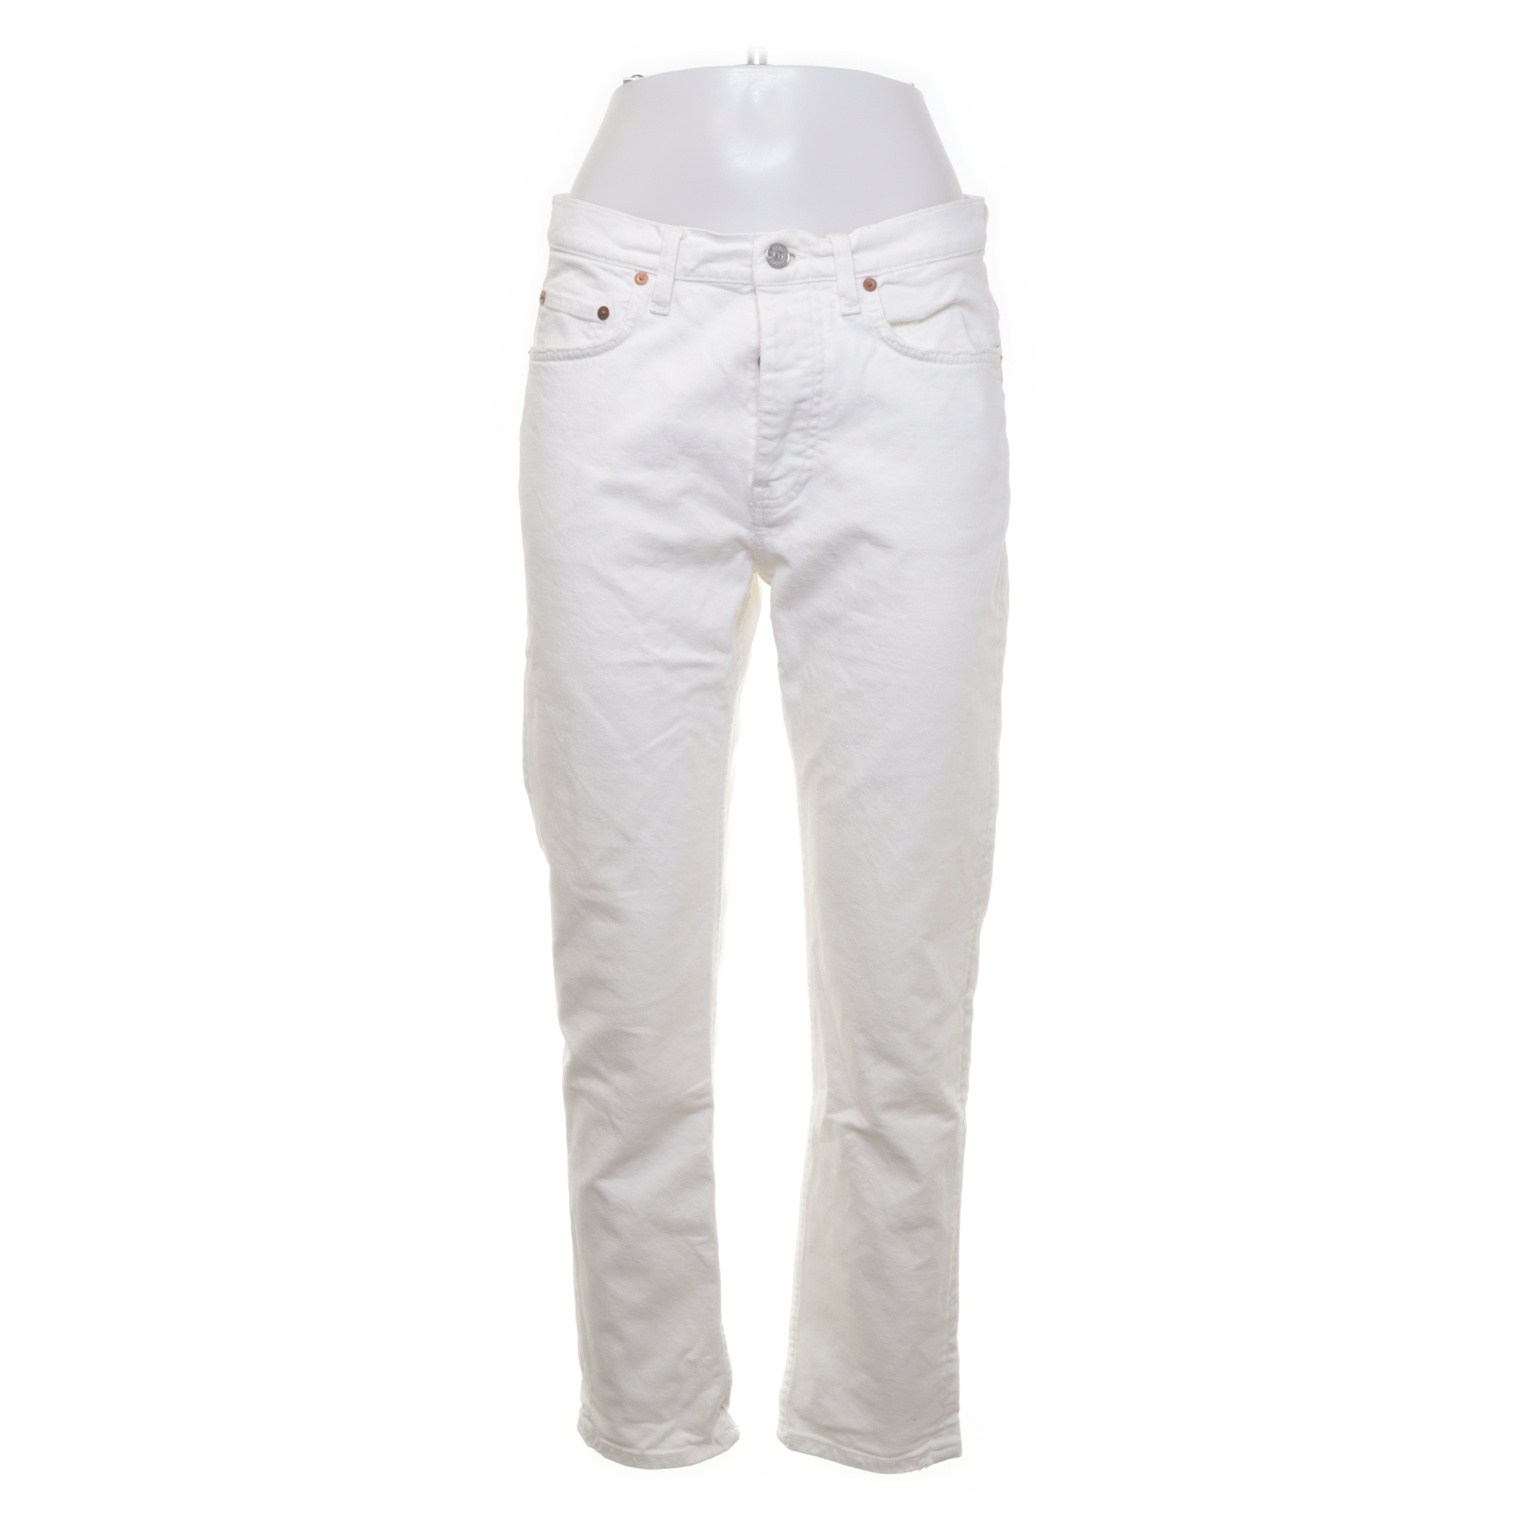 Acne Studios - Jeans - Größe: 30 - Weiß von Acne Studios